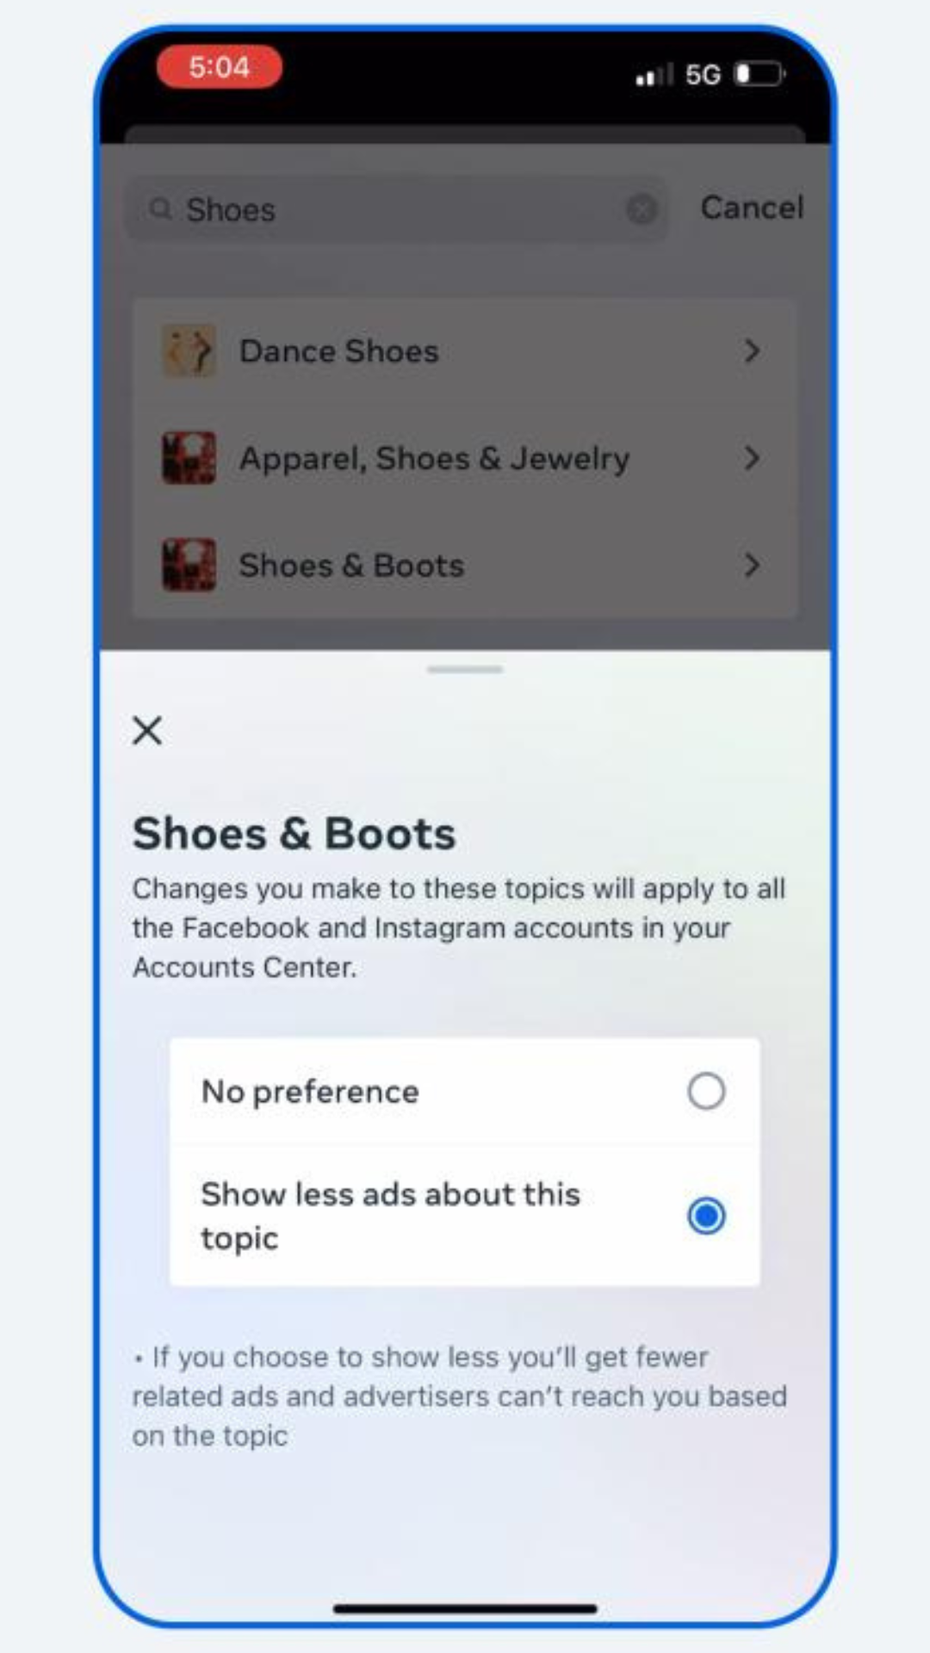 Das Werbecenter. "Shoes & Boots" sind das Thema, hier kann "Keine Präferenz" oder "Weniger Werbeanzeigen zu dem Thema" gewählt werden.